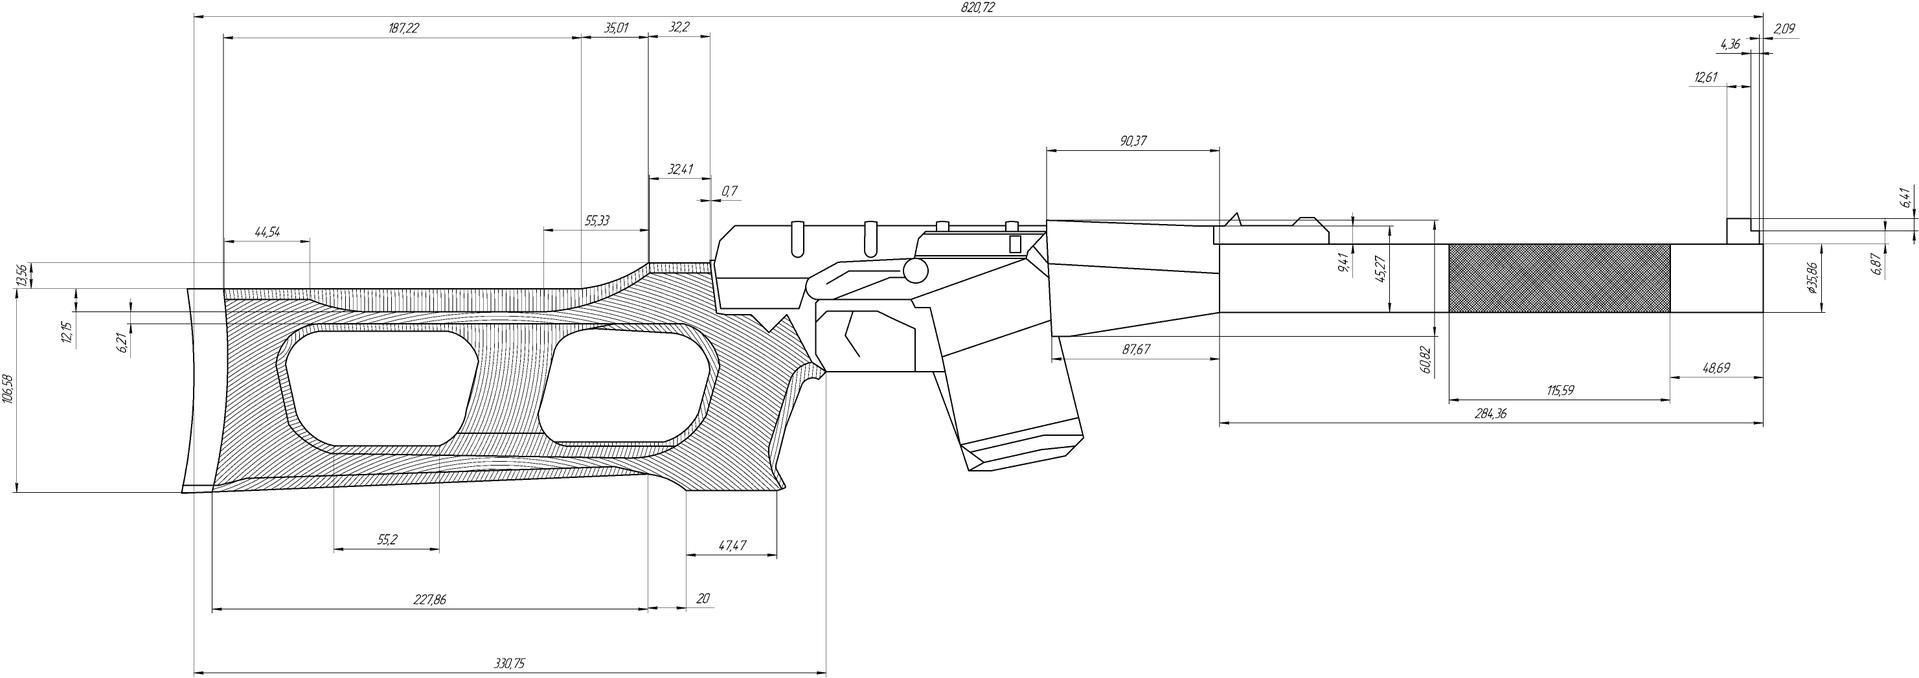 чертеж awp снайперской винтовки для дерева фото 11